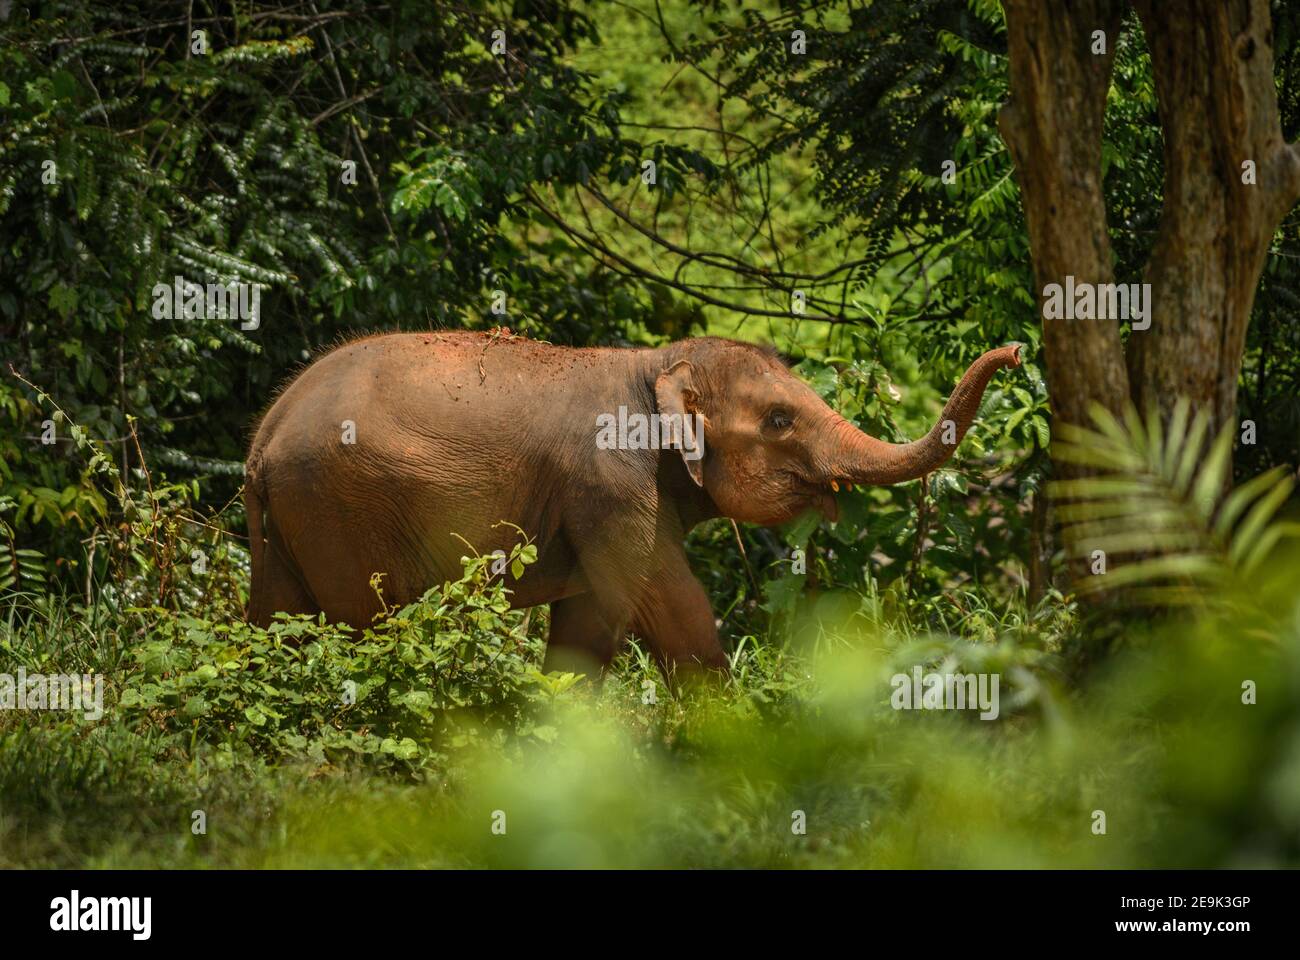 Elefante asiatico - Elefas maximus, giovane elefante asiatico, mammifero iconico dall'Asia, Thailandia. Foto Stock